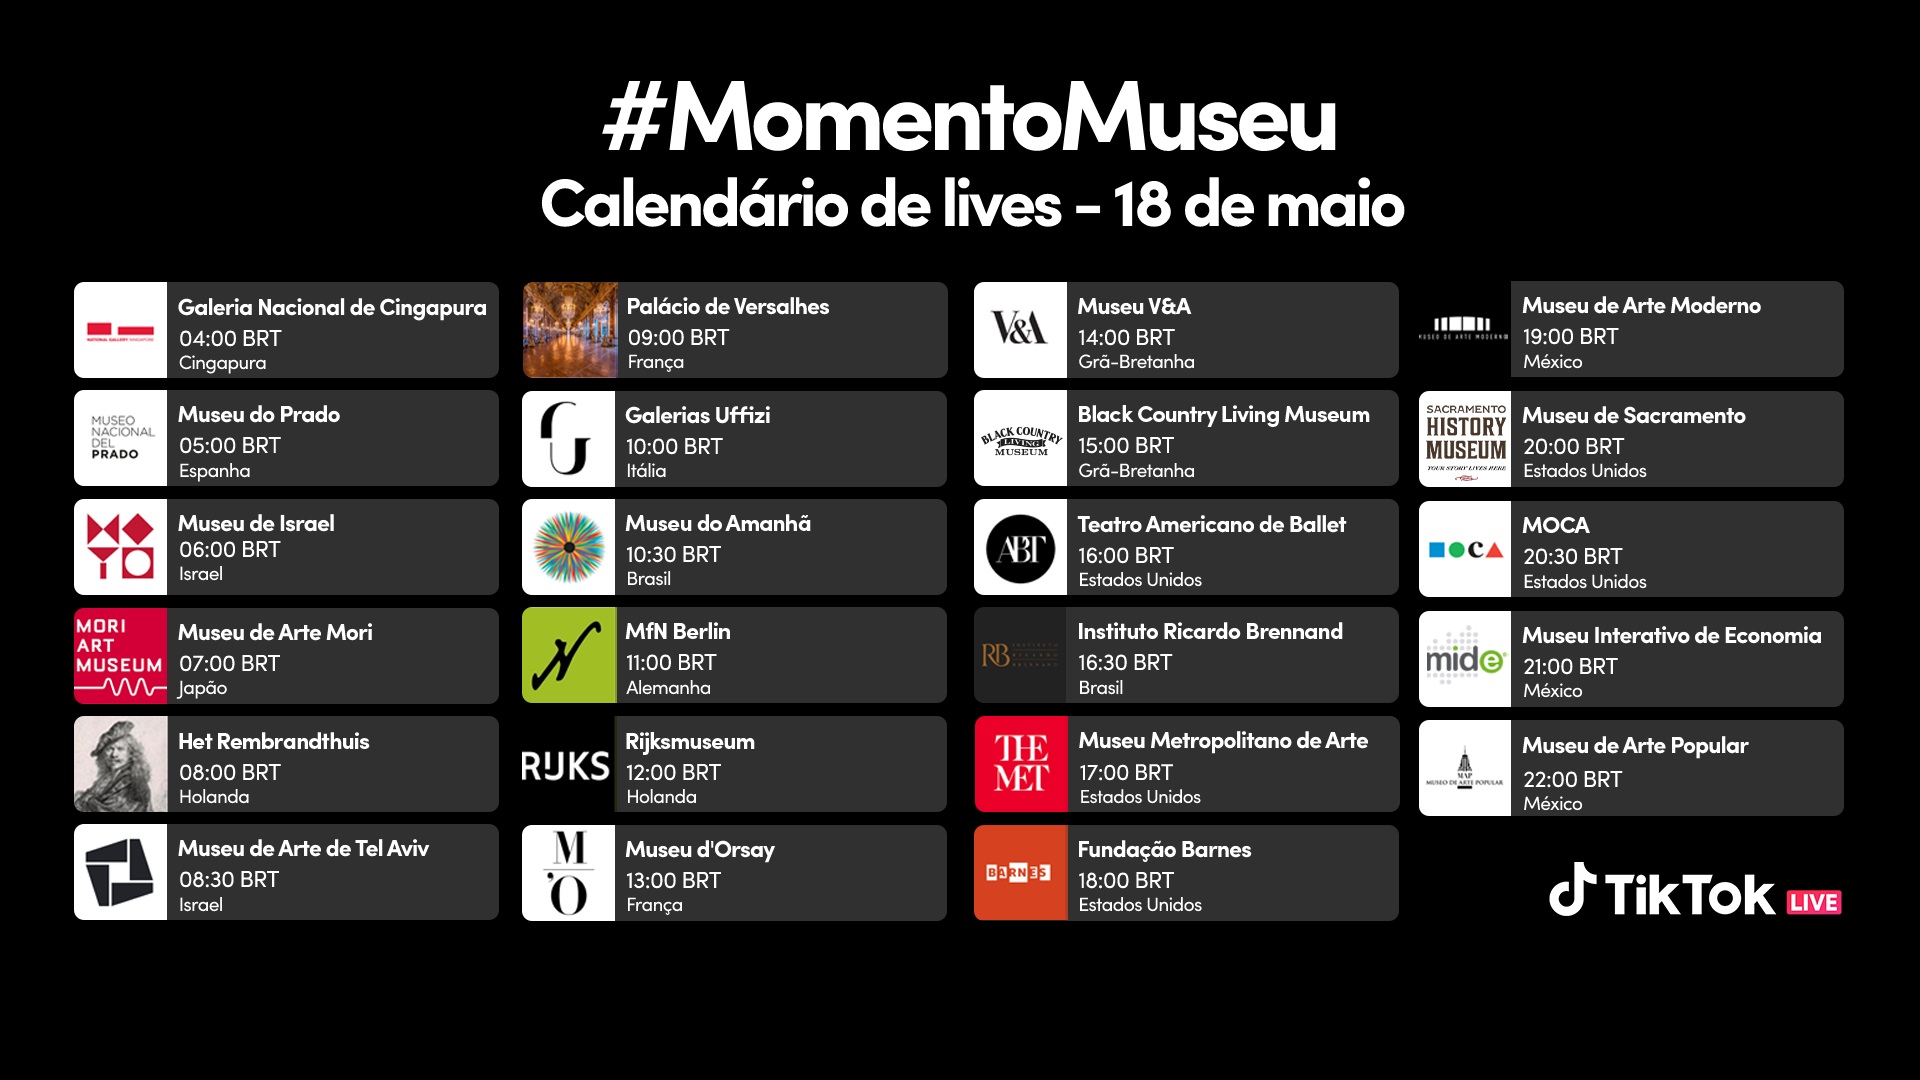 Программирование #MomentoMuseu: ТИК Так. Раскрытие.